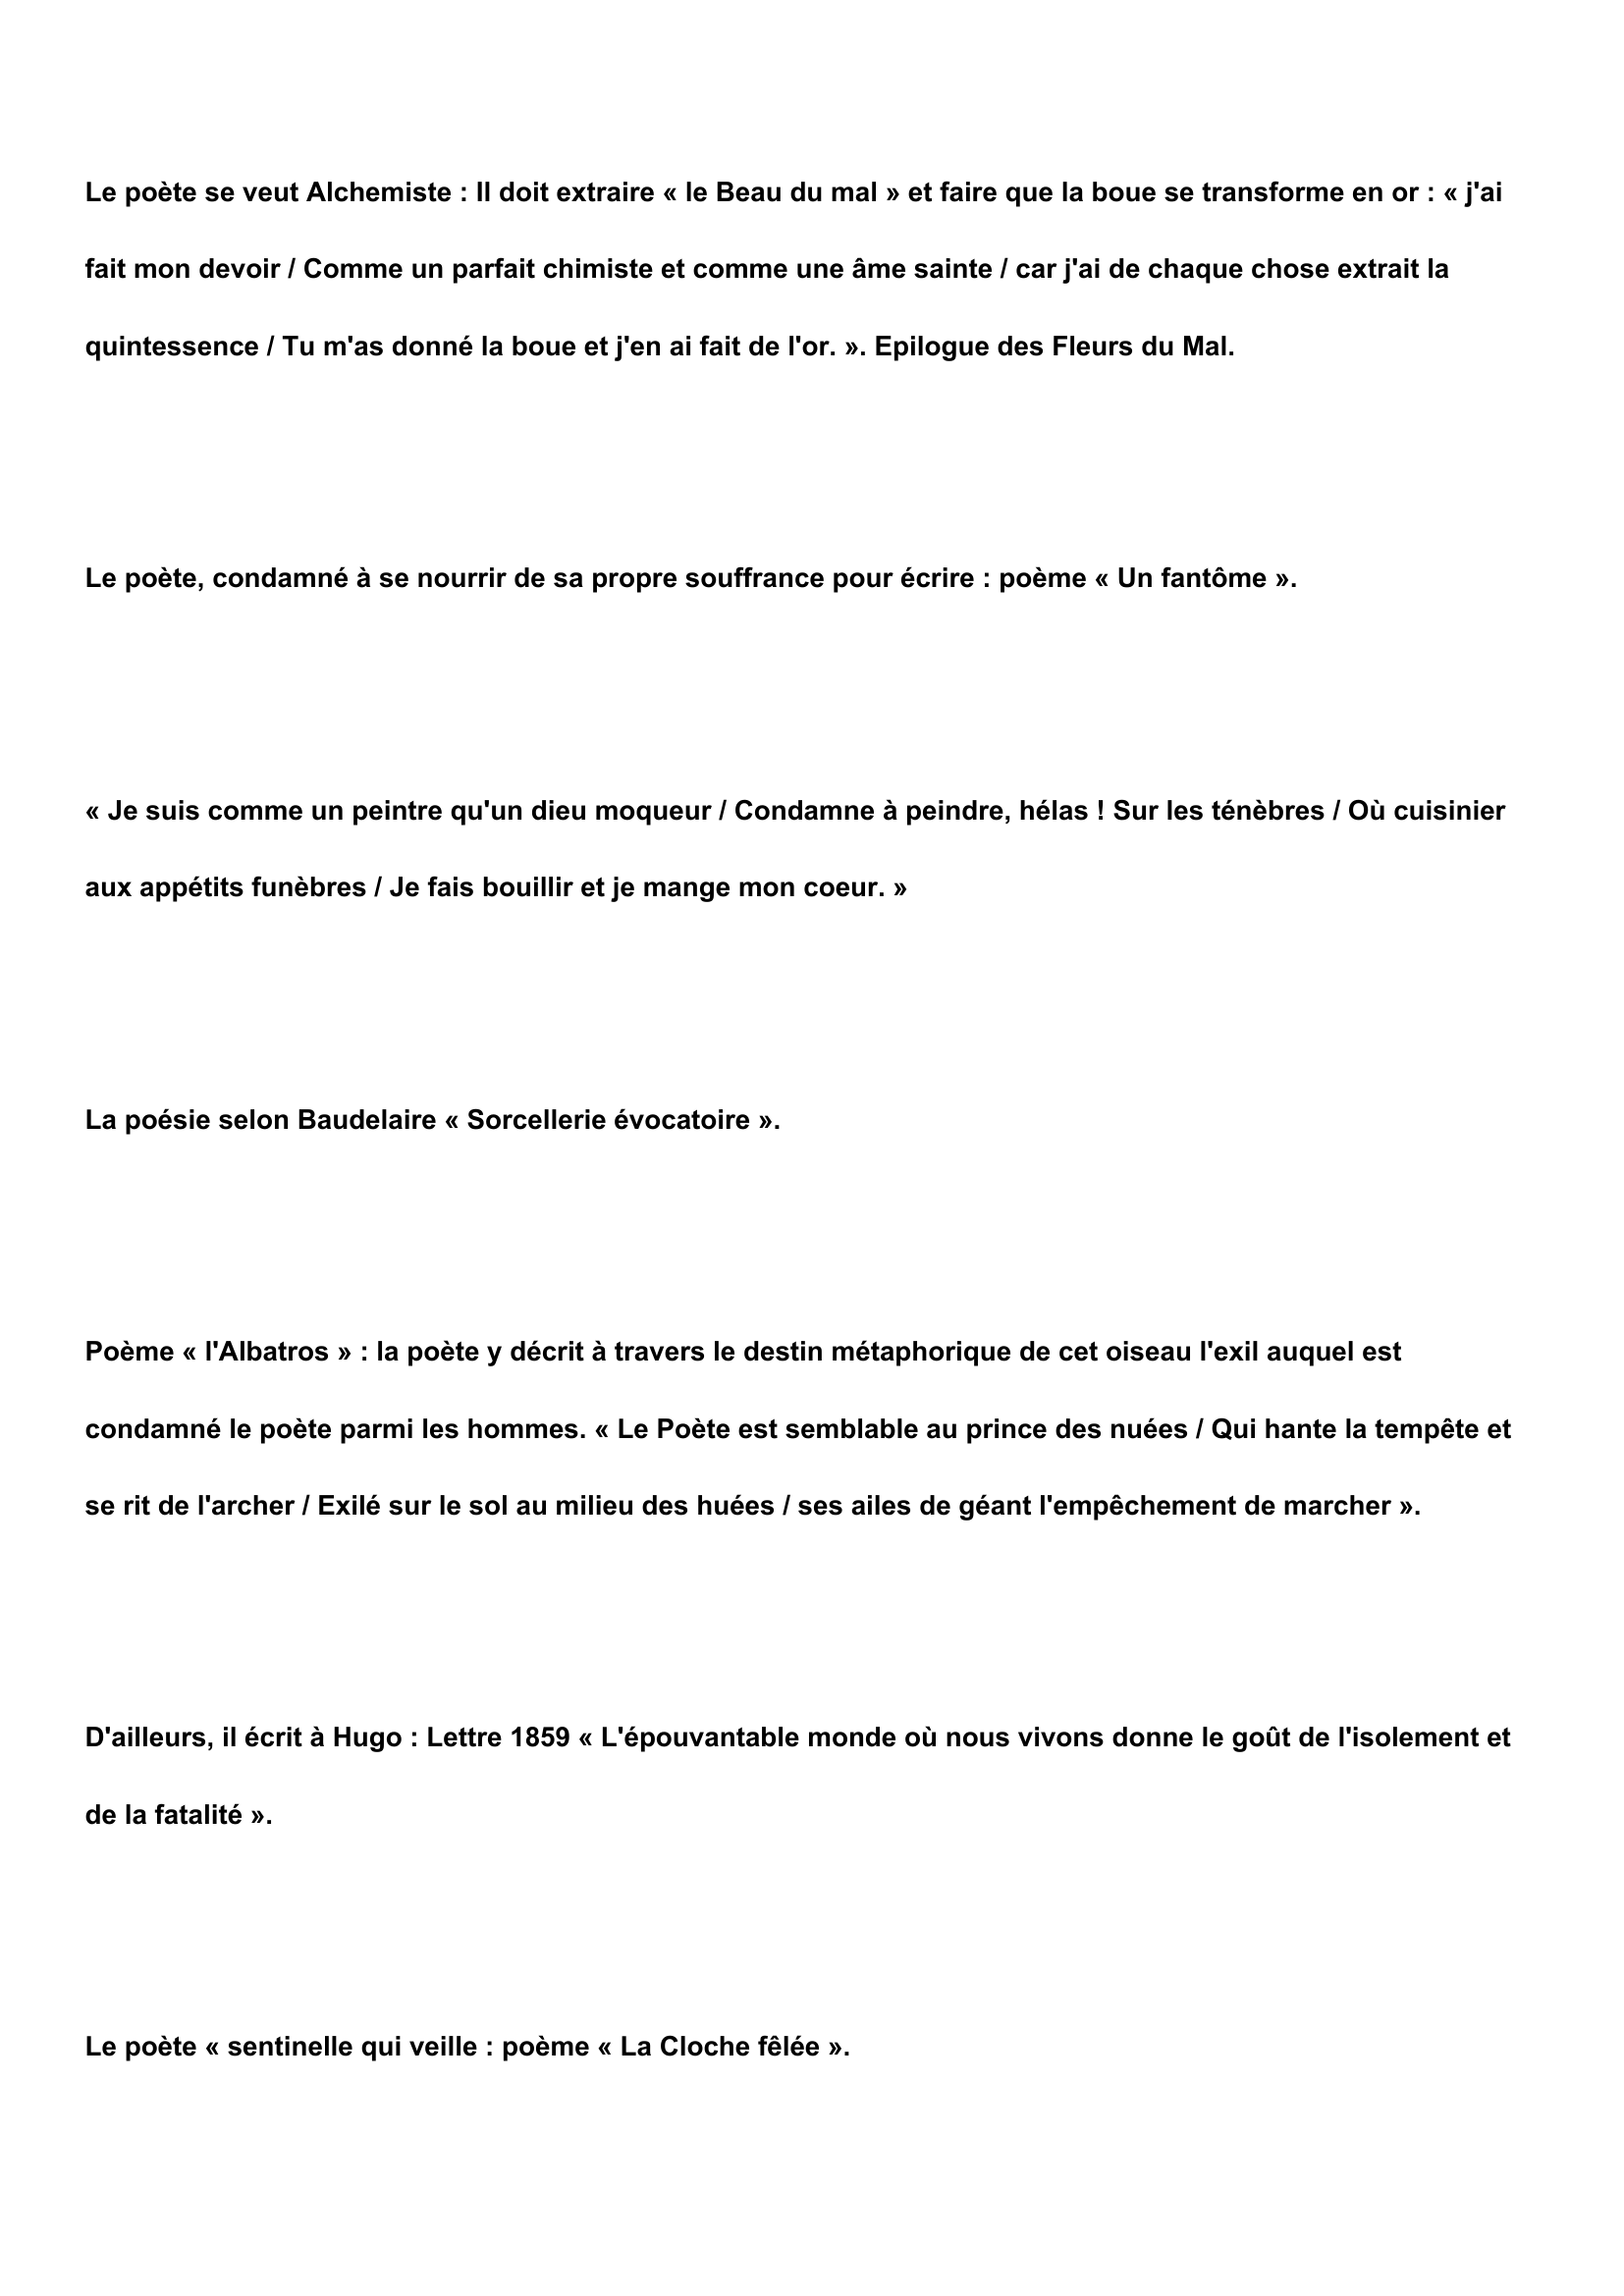 Prévisualisation du document QUELQUES ÉLÉMENTS COMPLÉMENTAIRES CONCERNANT BAUDELAIRE, SA VISION DE LA POÉSIE, LA FONCTION DU POÈTE...